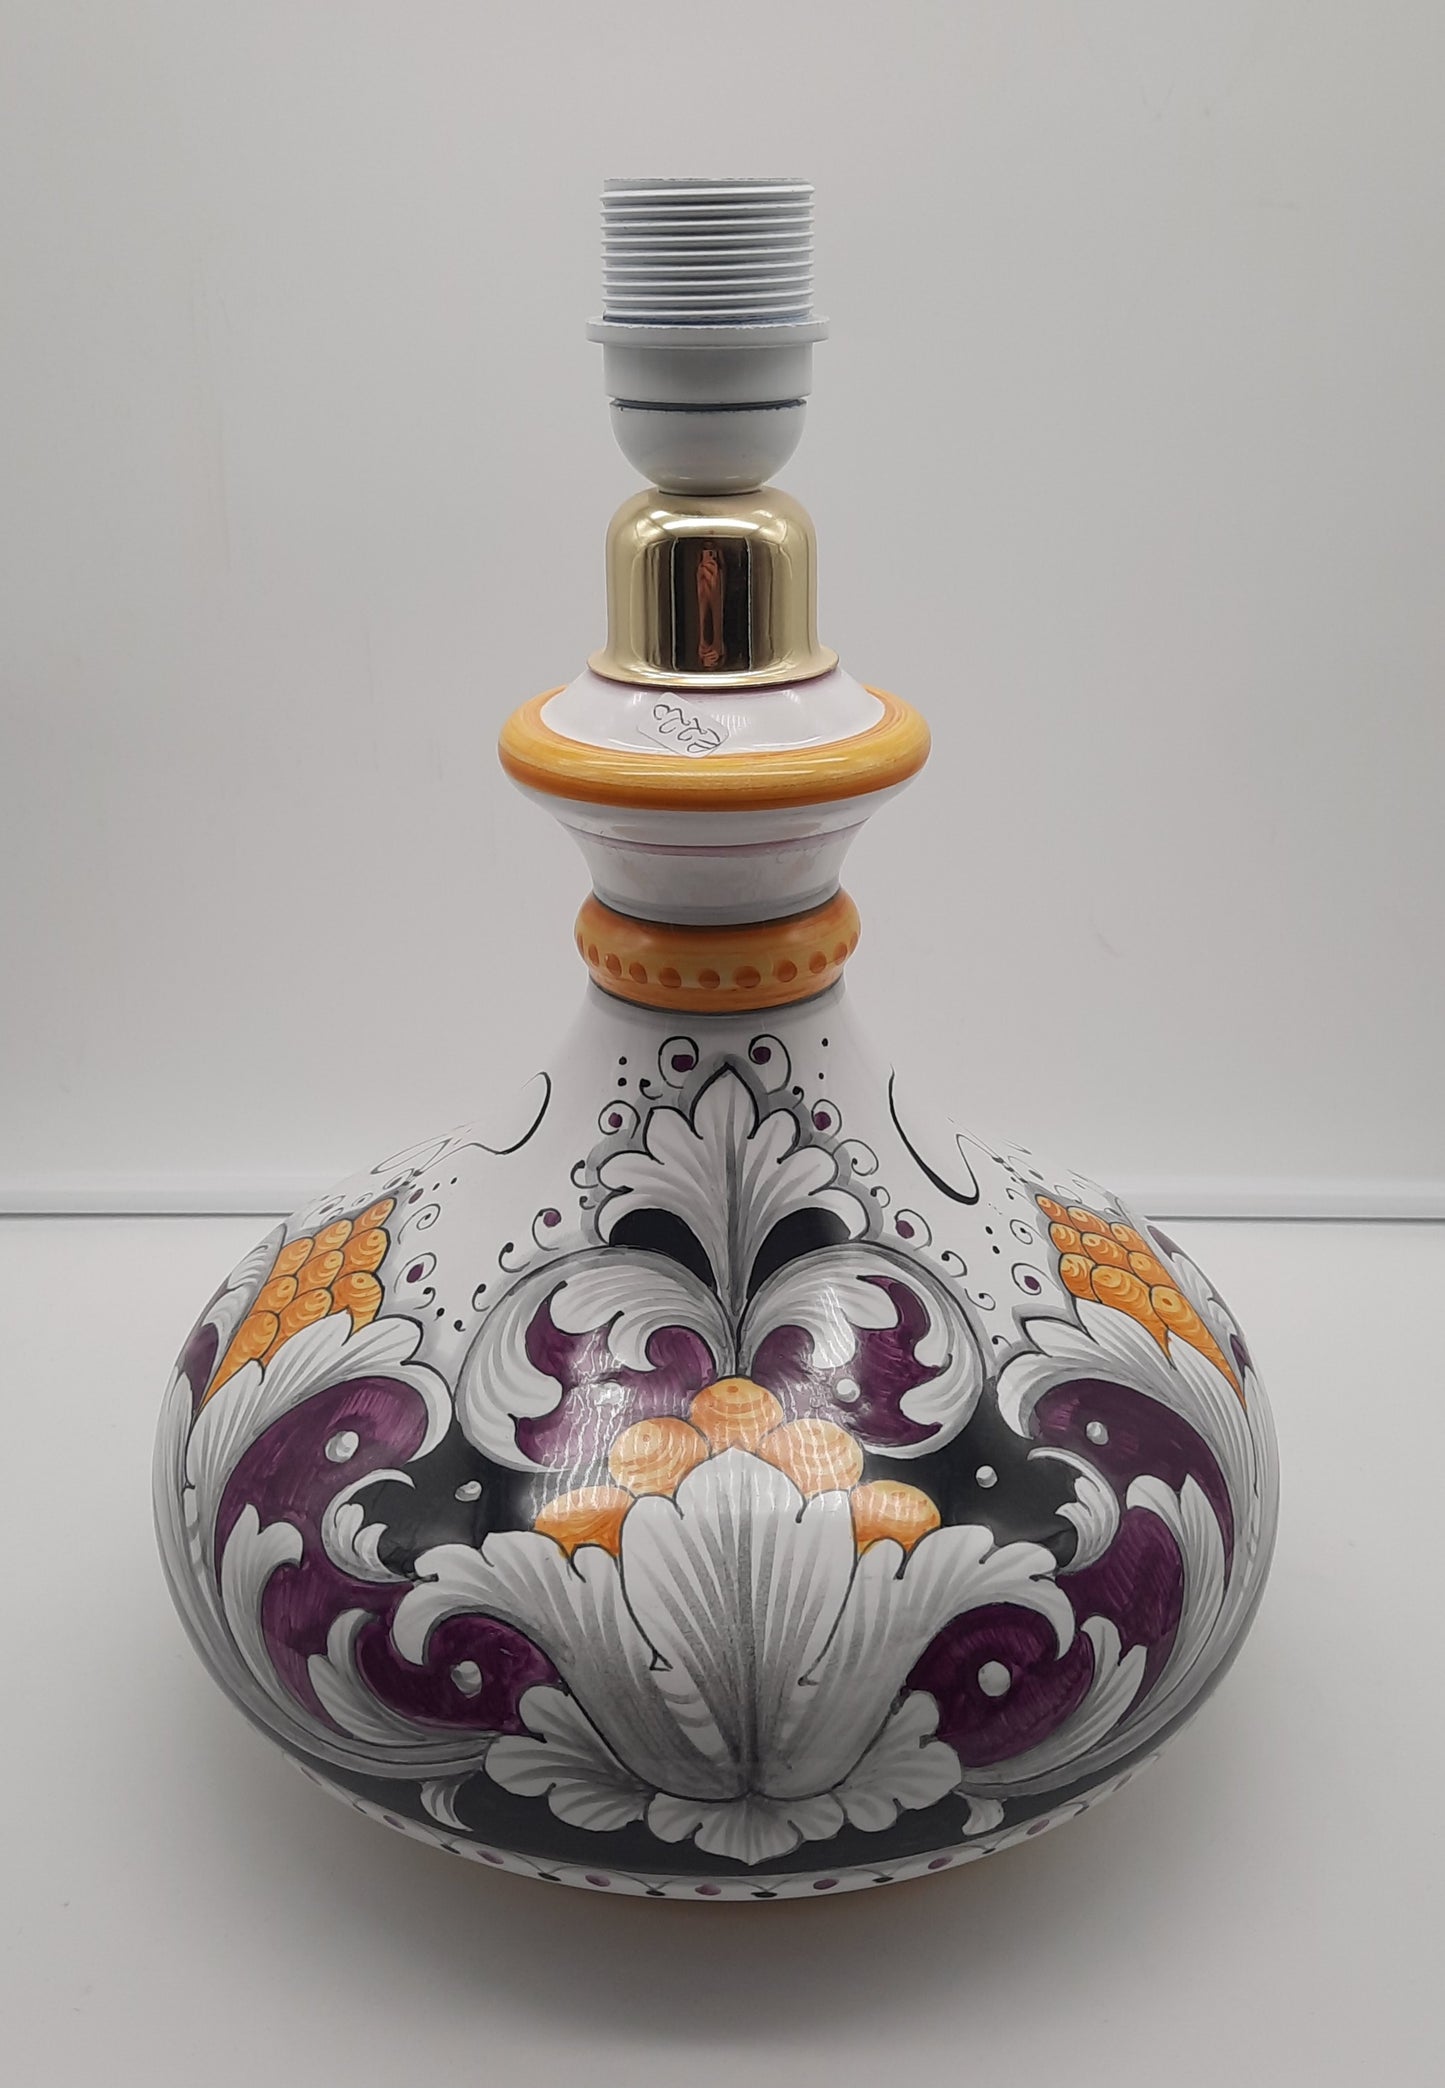 Lampada cm 25 (con cappello incluso) in ceramica dipinta a mano. Un insieme di colori eleganti e raffinati per la tua casa